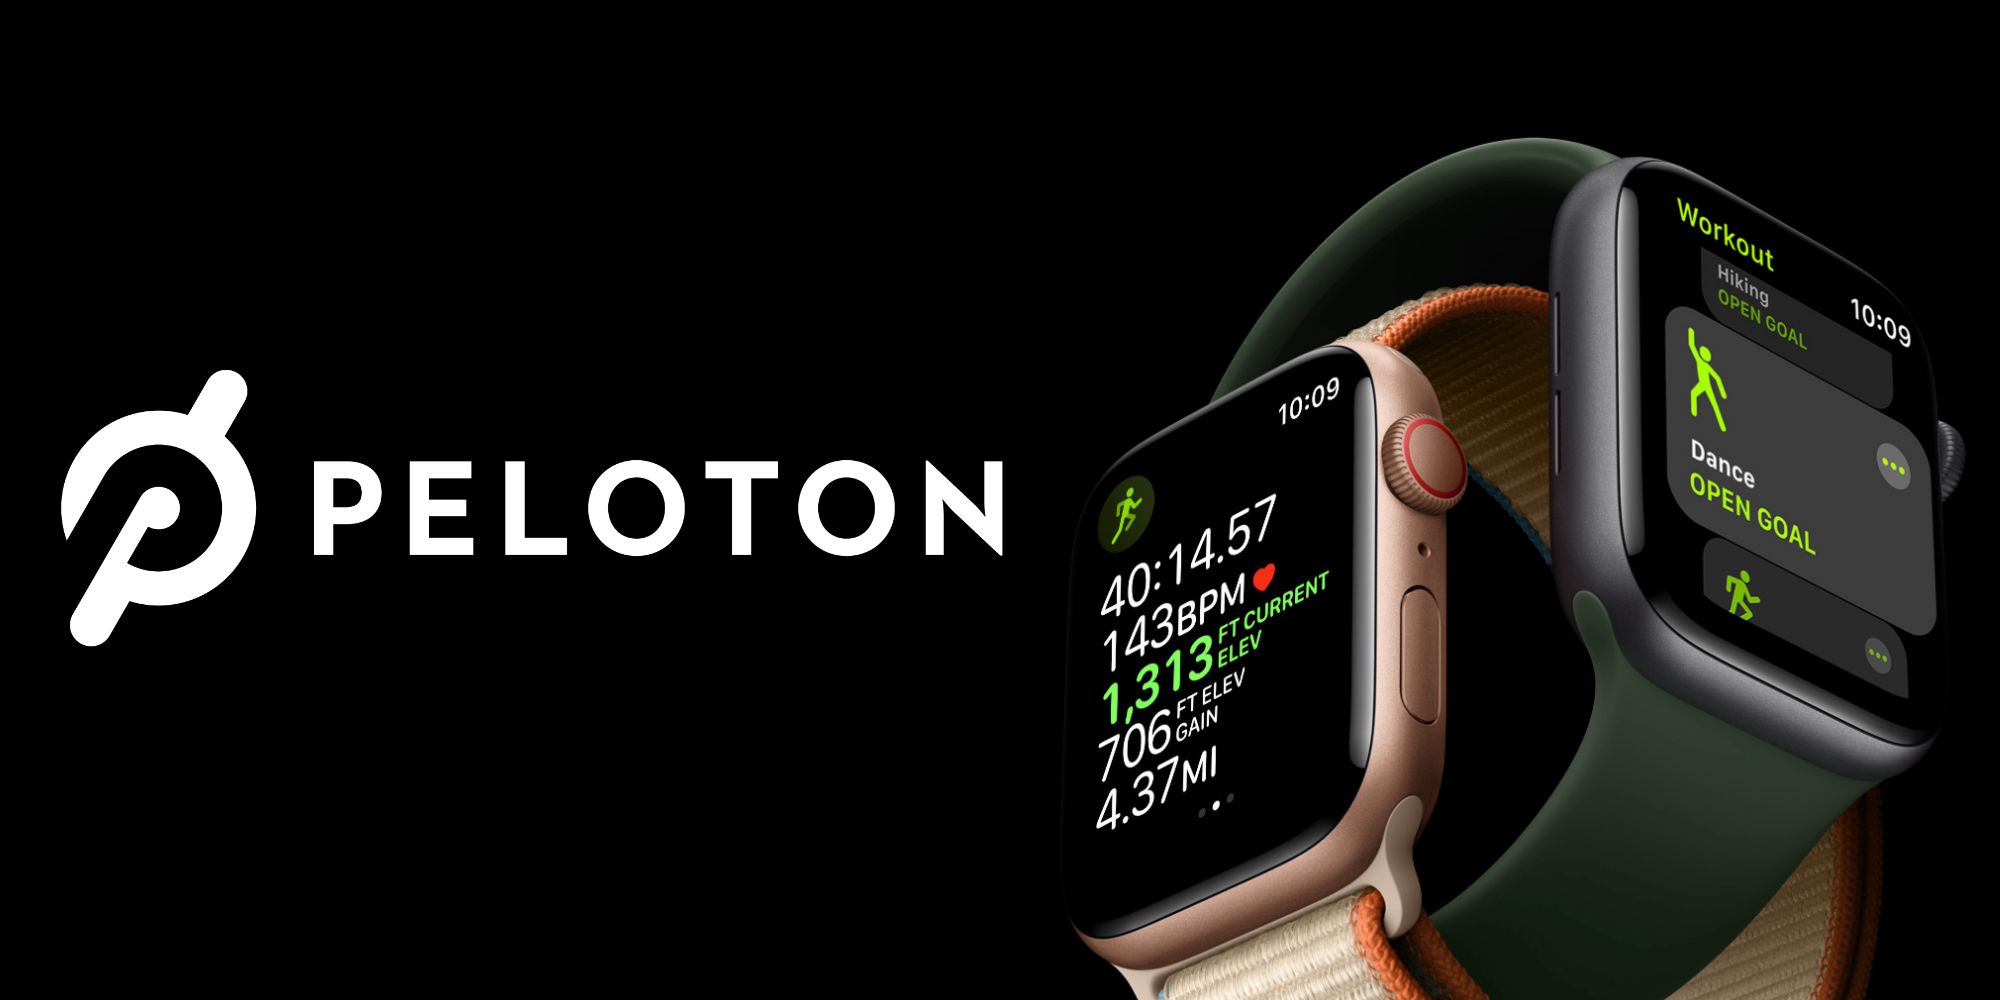 Peloton logo next to an Apple Watch